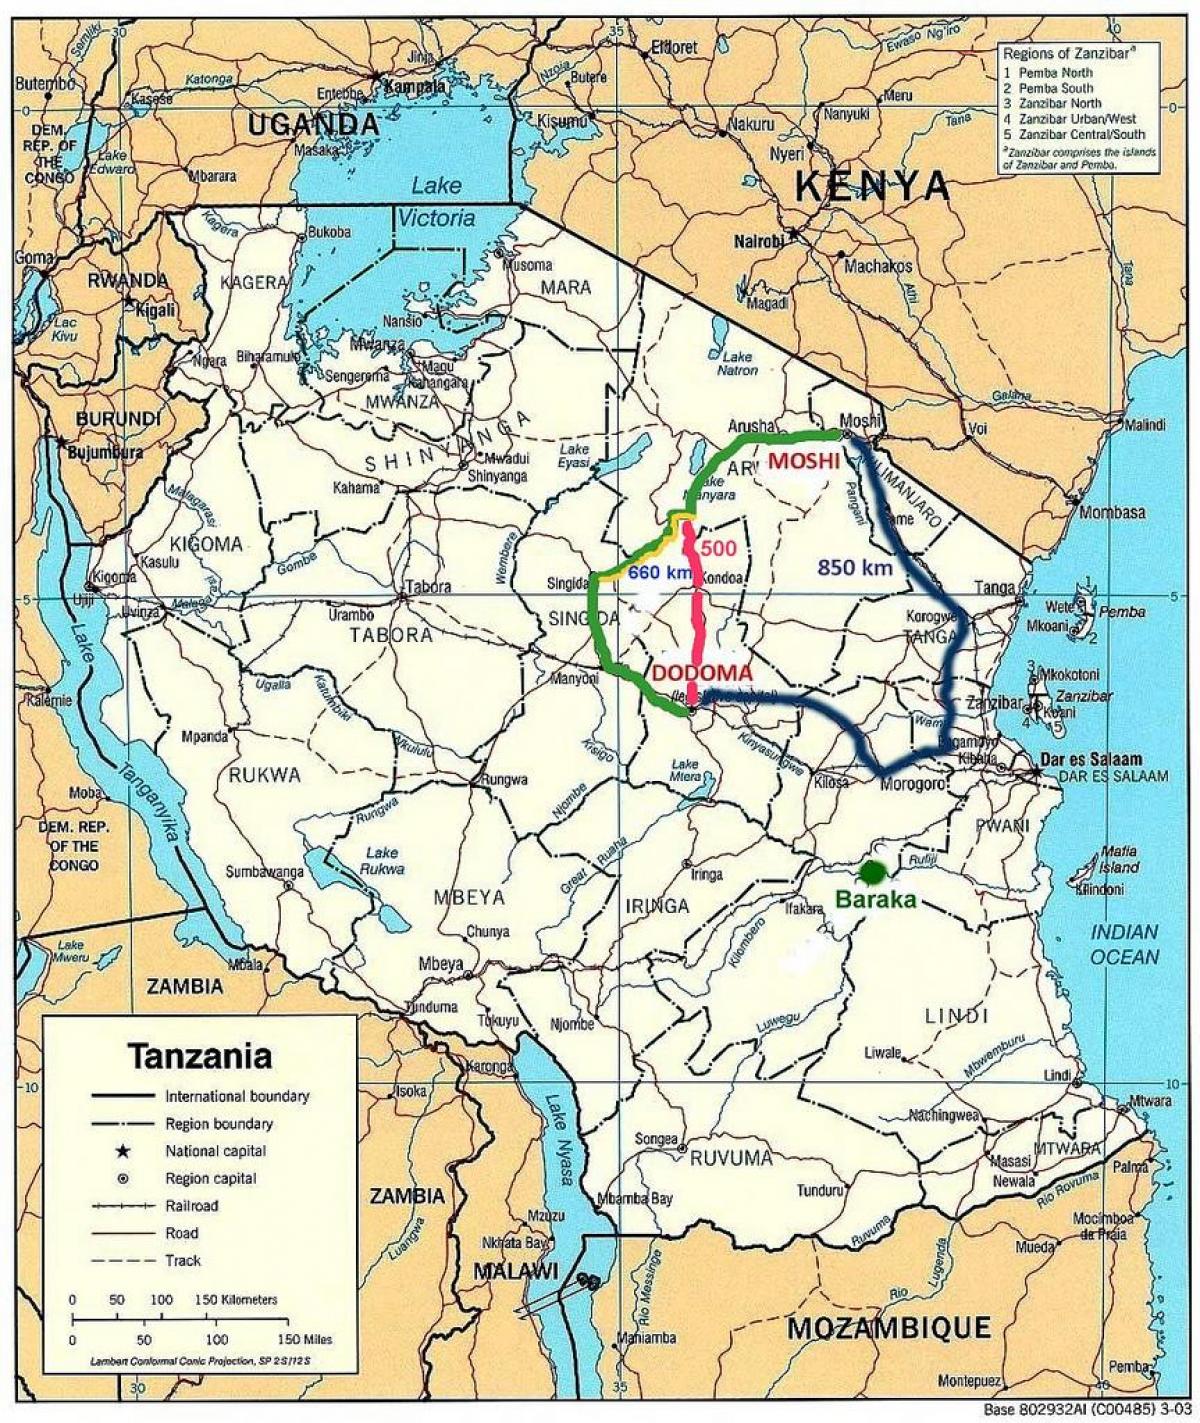 ճանապարհային ցանց Տանզանիայում քարտեզի վրա